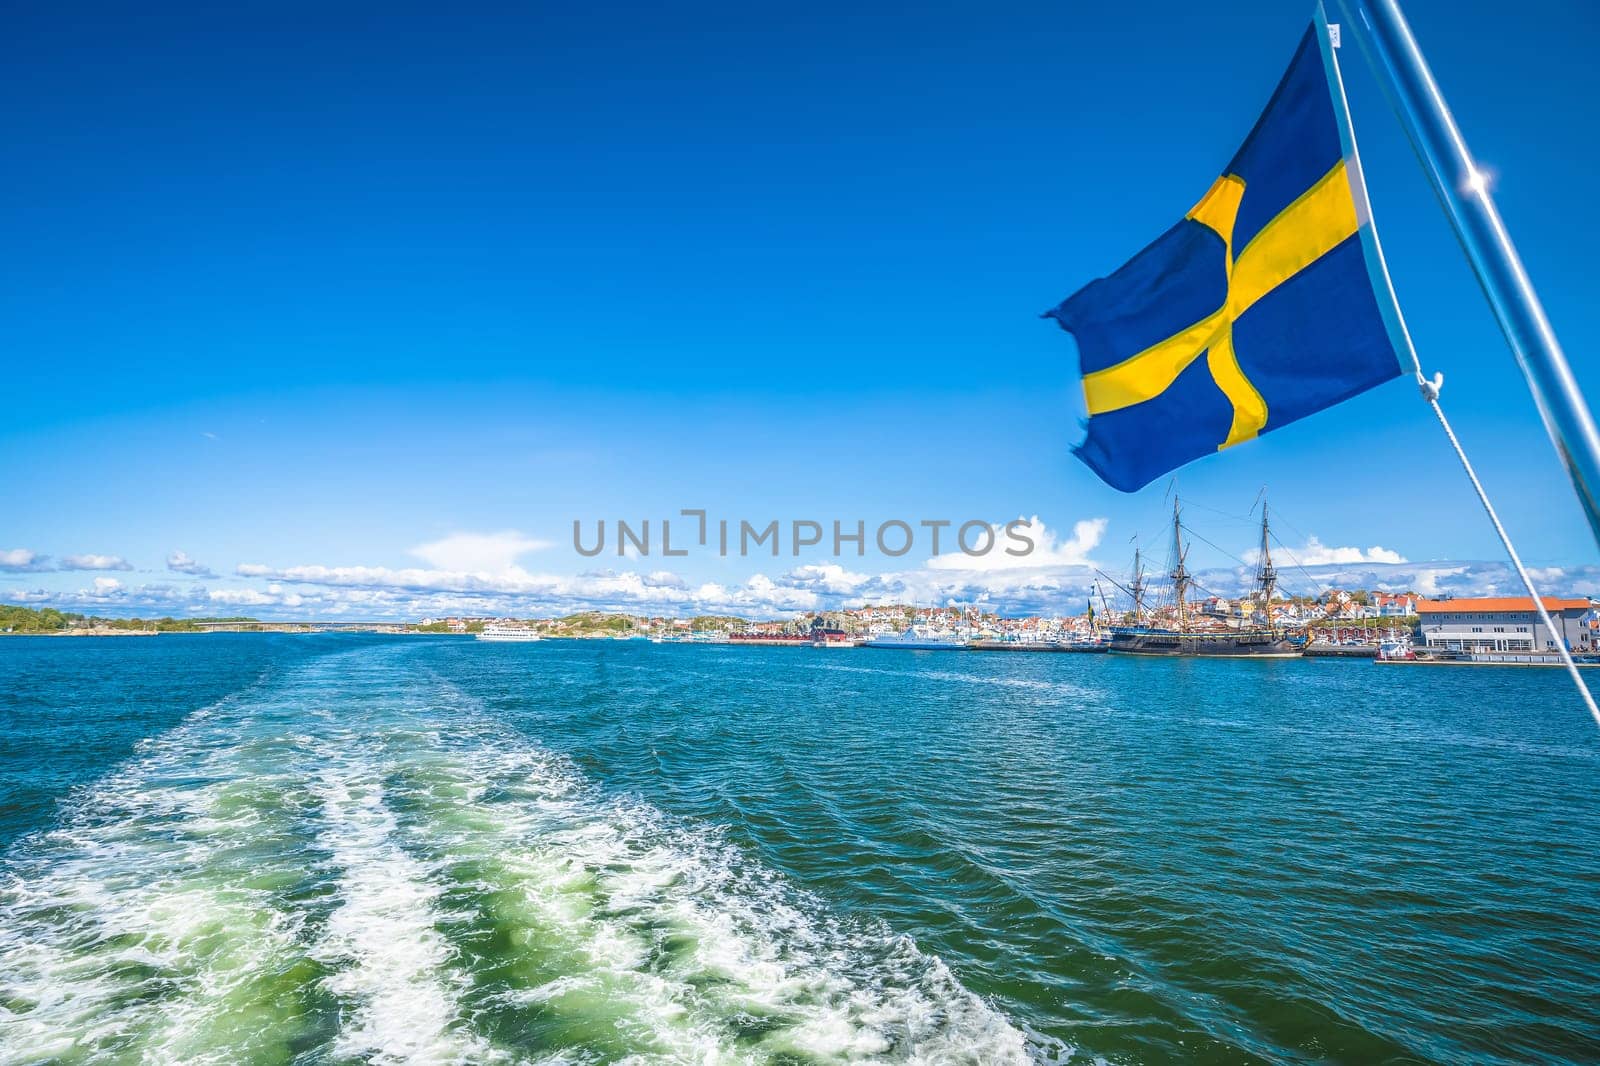 Swedish flag on the boat in Gothenburg islands archipelago near Donso island by xbrchx